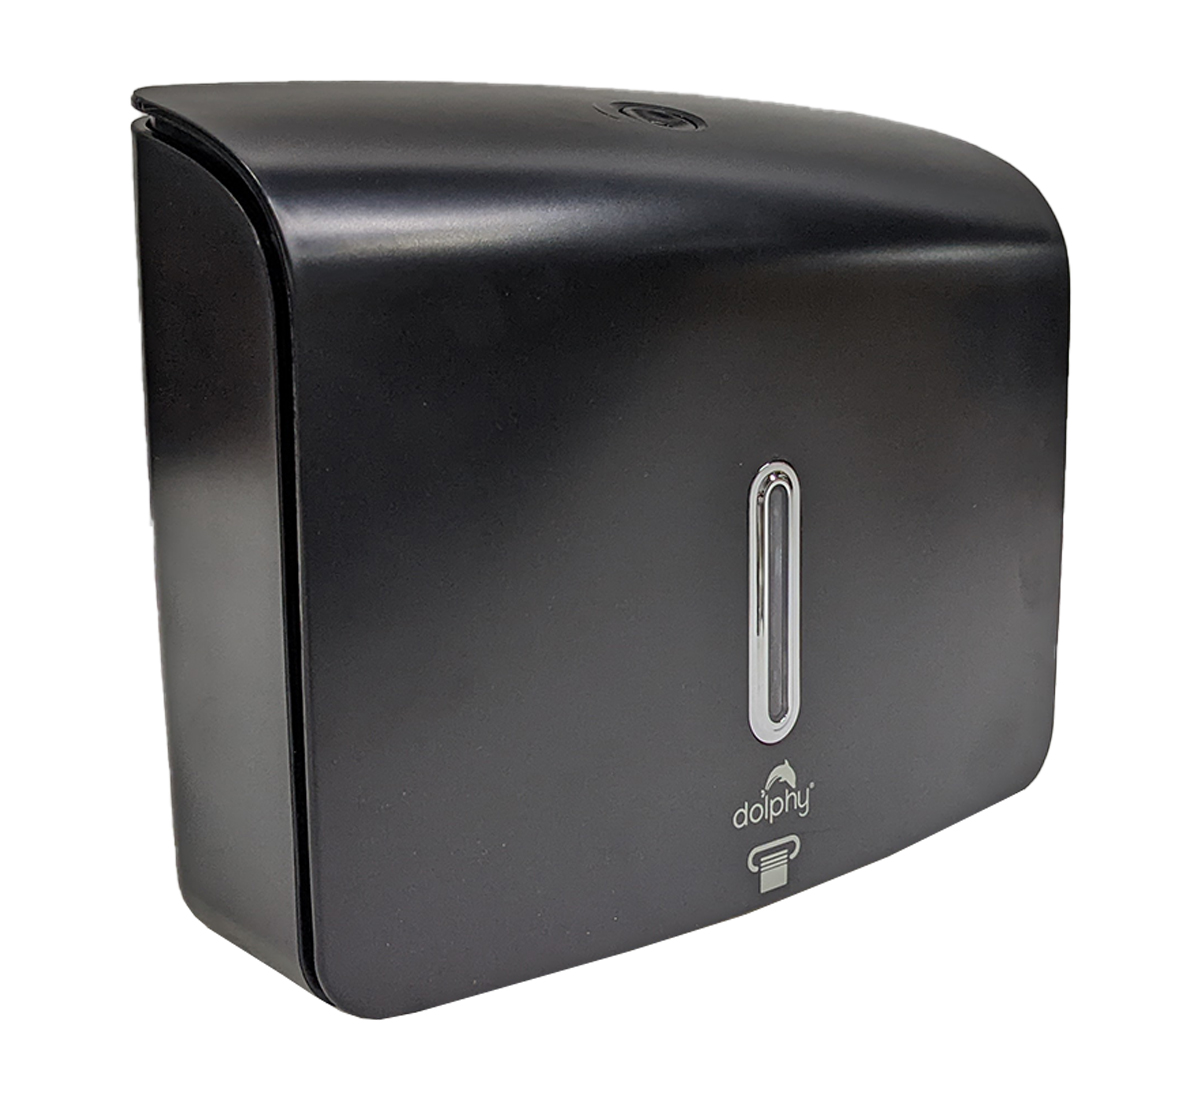 Dolphy Multifold Mini Hand Tissue Paper Dispenser - Black
